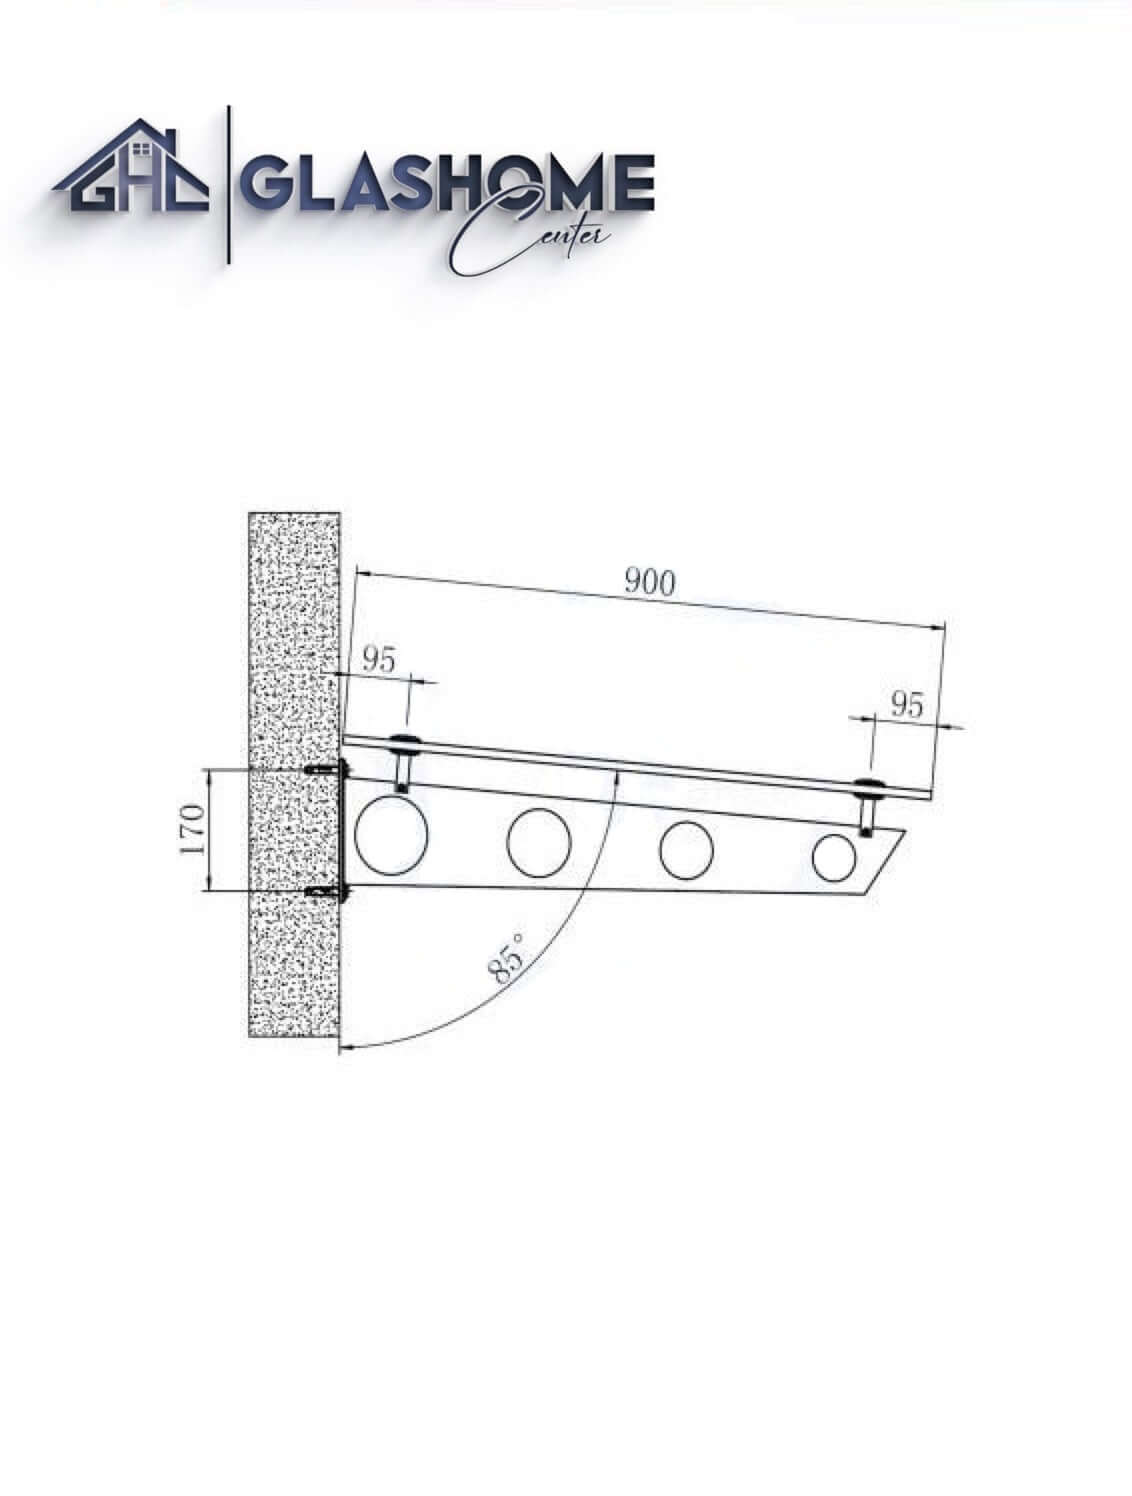 GlasHomeCenter - baldacchino in vetro - vetro trasparente - 140x90 cm - vetro di sicurezza stratificato 13,1 mm - incl.2 staffe in acciaio inossidabile nero variante "Stoccolma"